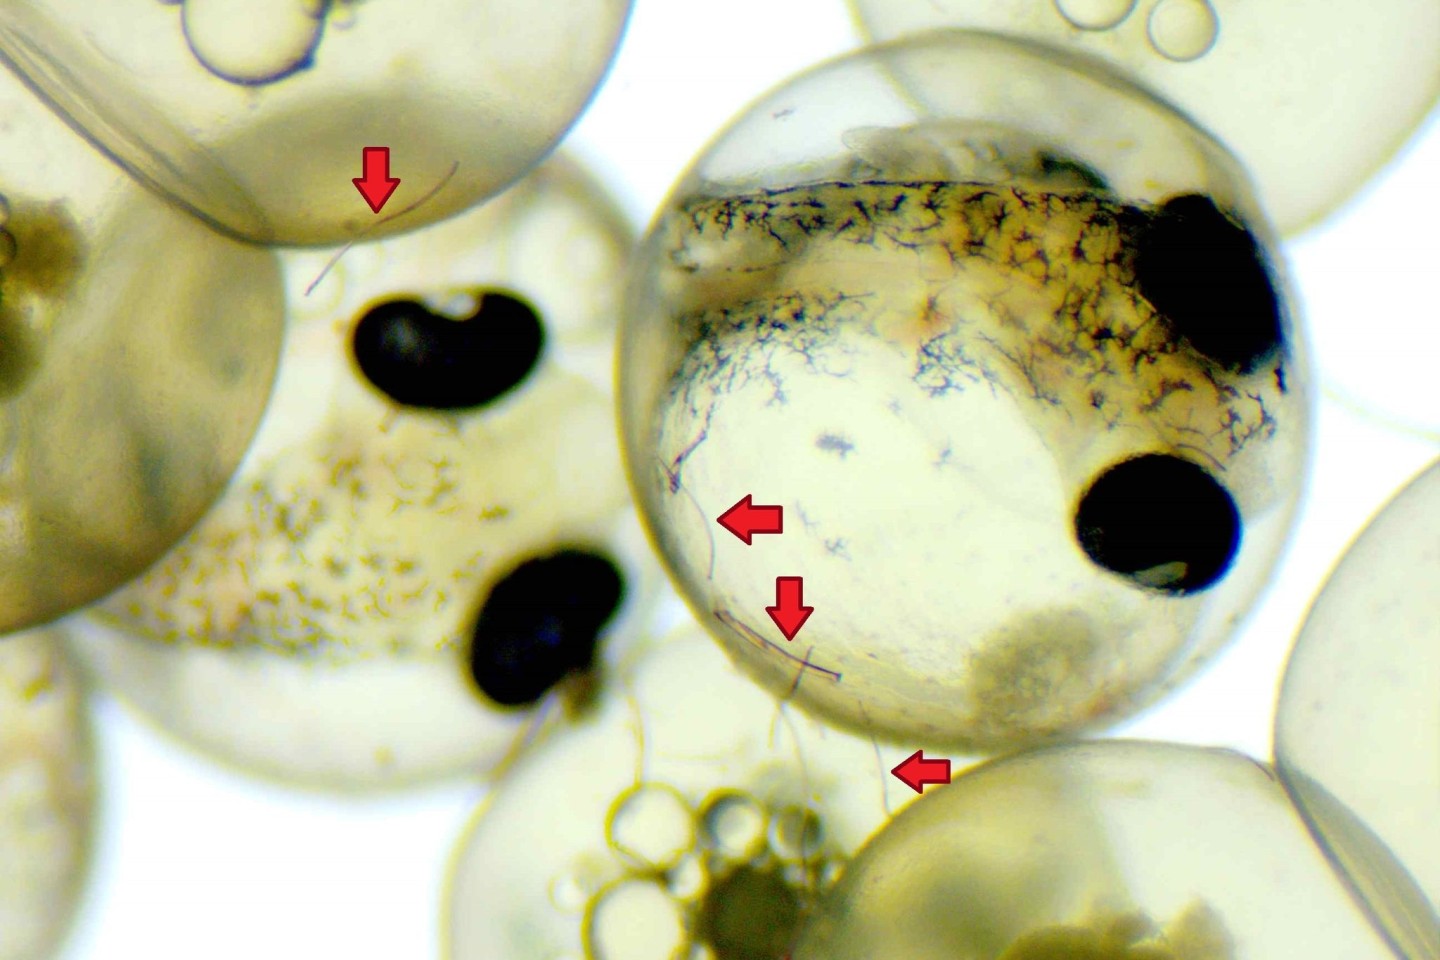 Fisch-Embryonen entwickeln sich trotz anhaftender Mikroplastikfasern (Pfeile) unbeschadet.